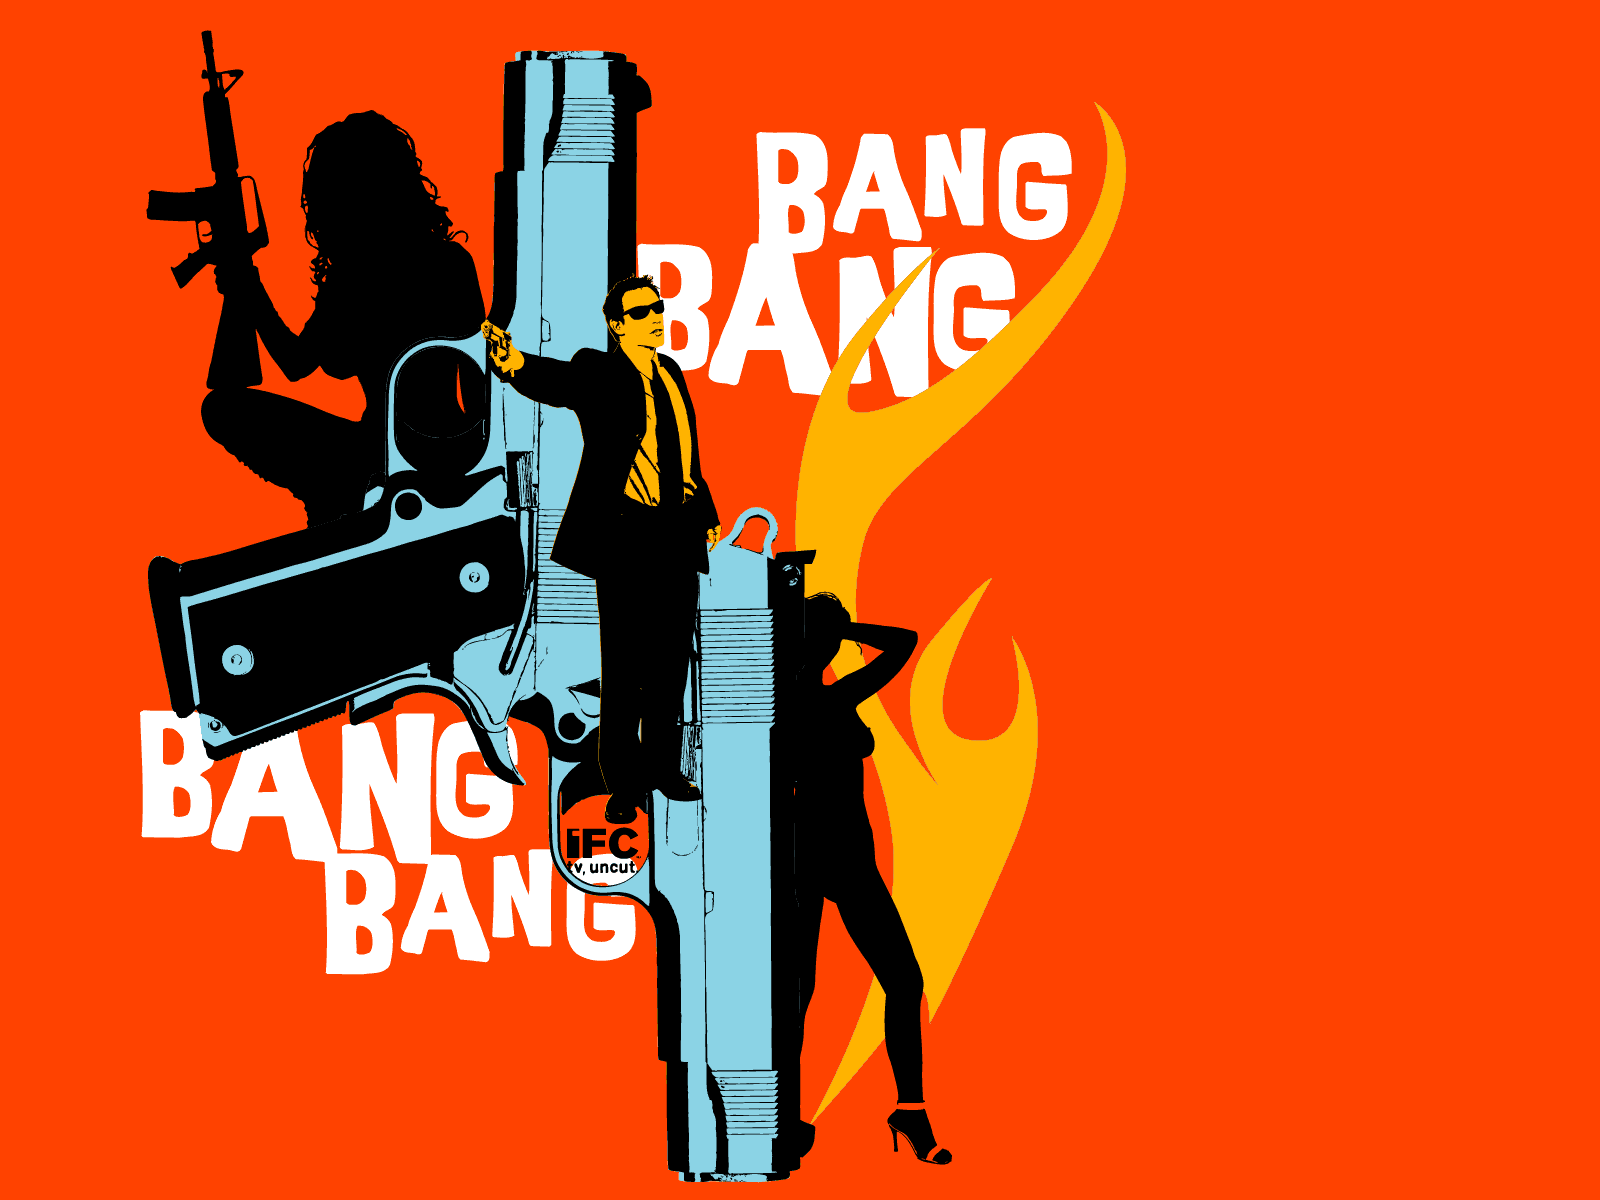 Bang. Ban ban. G-ba. Bang картинка. Bang me перевод